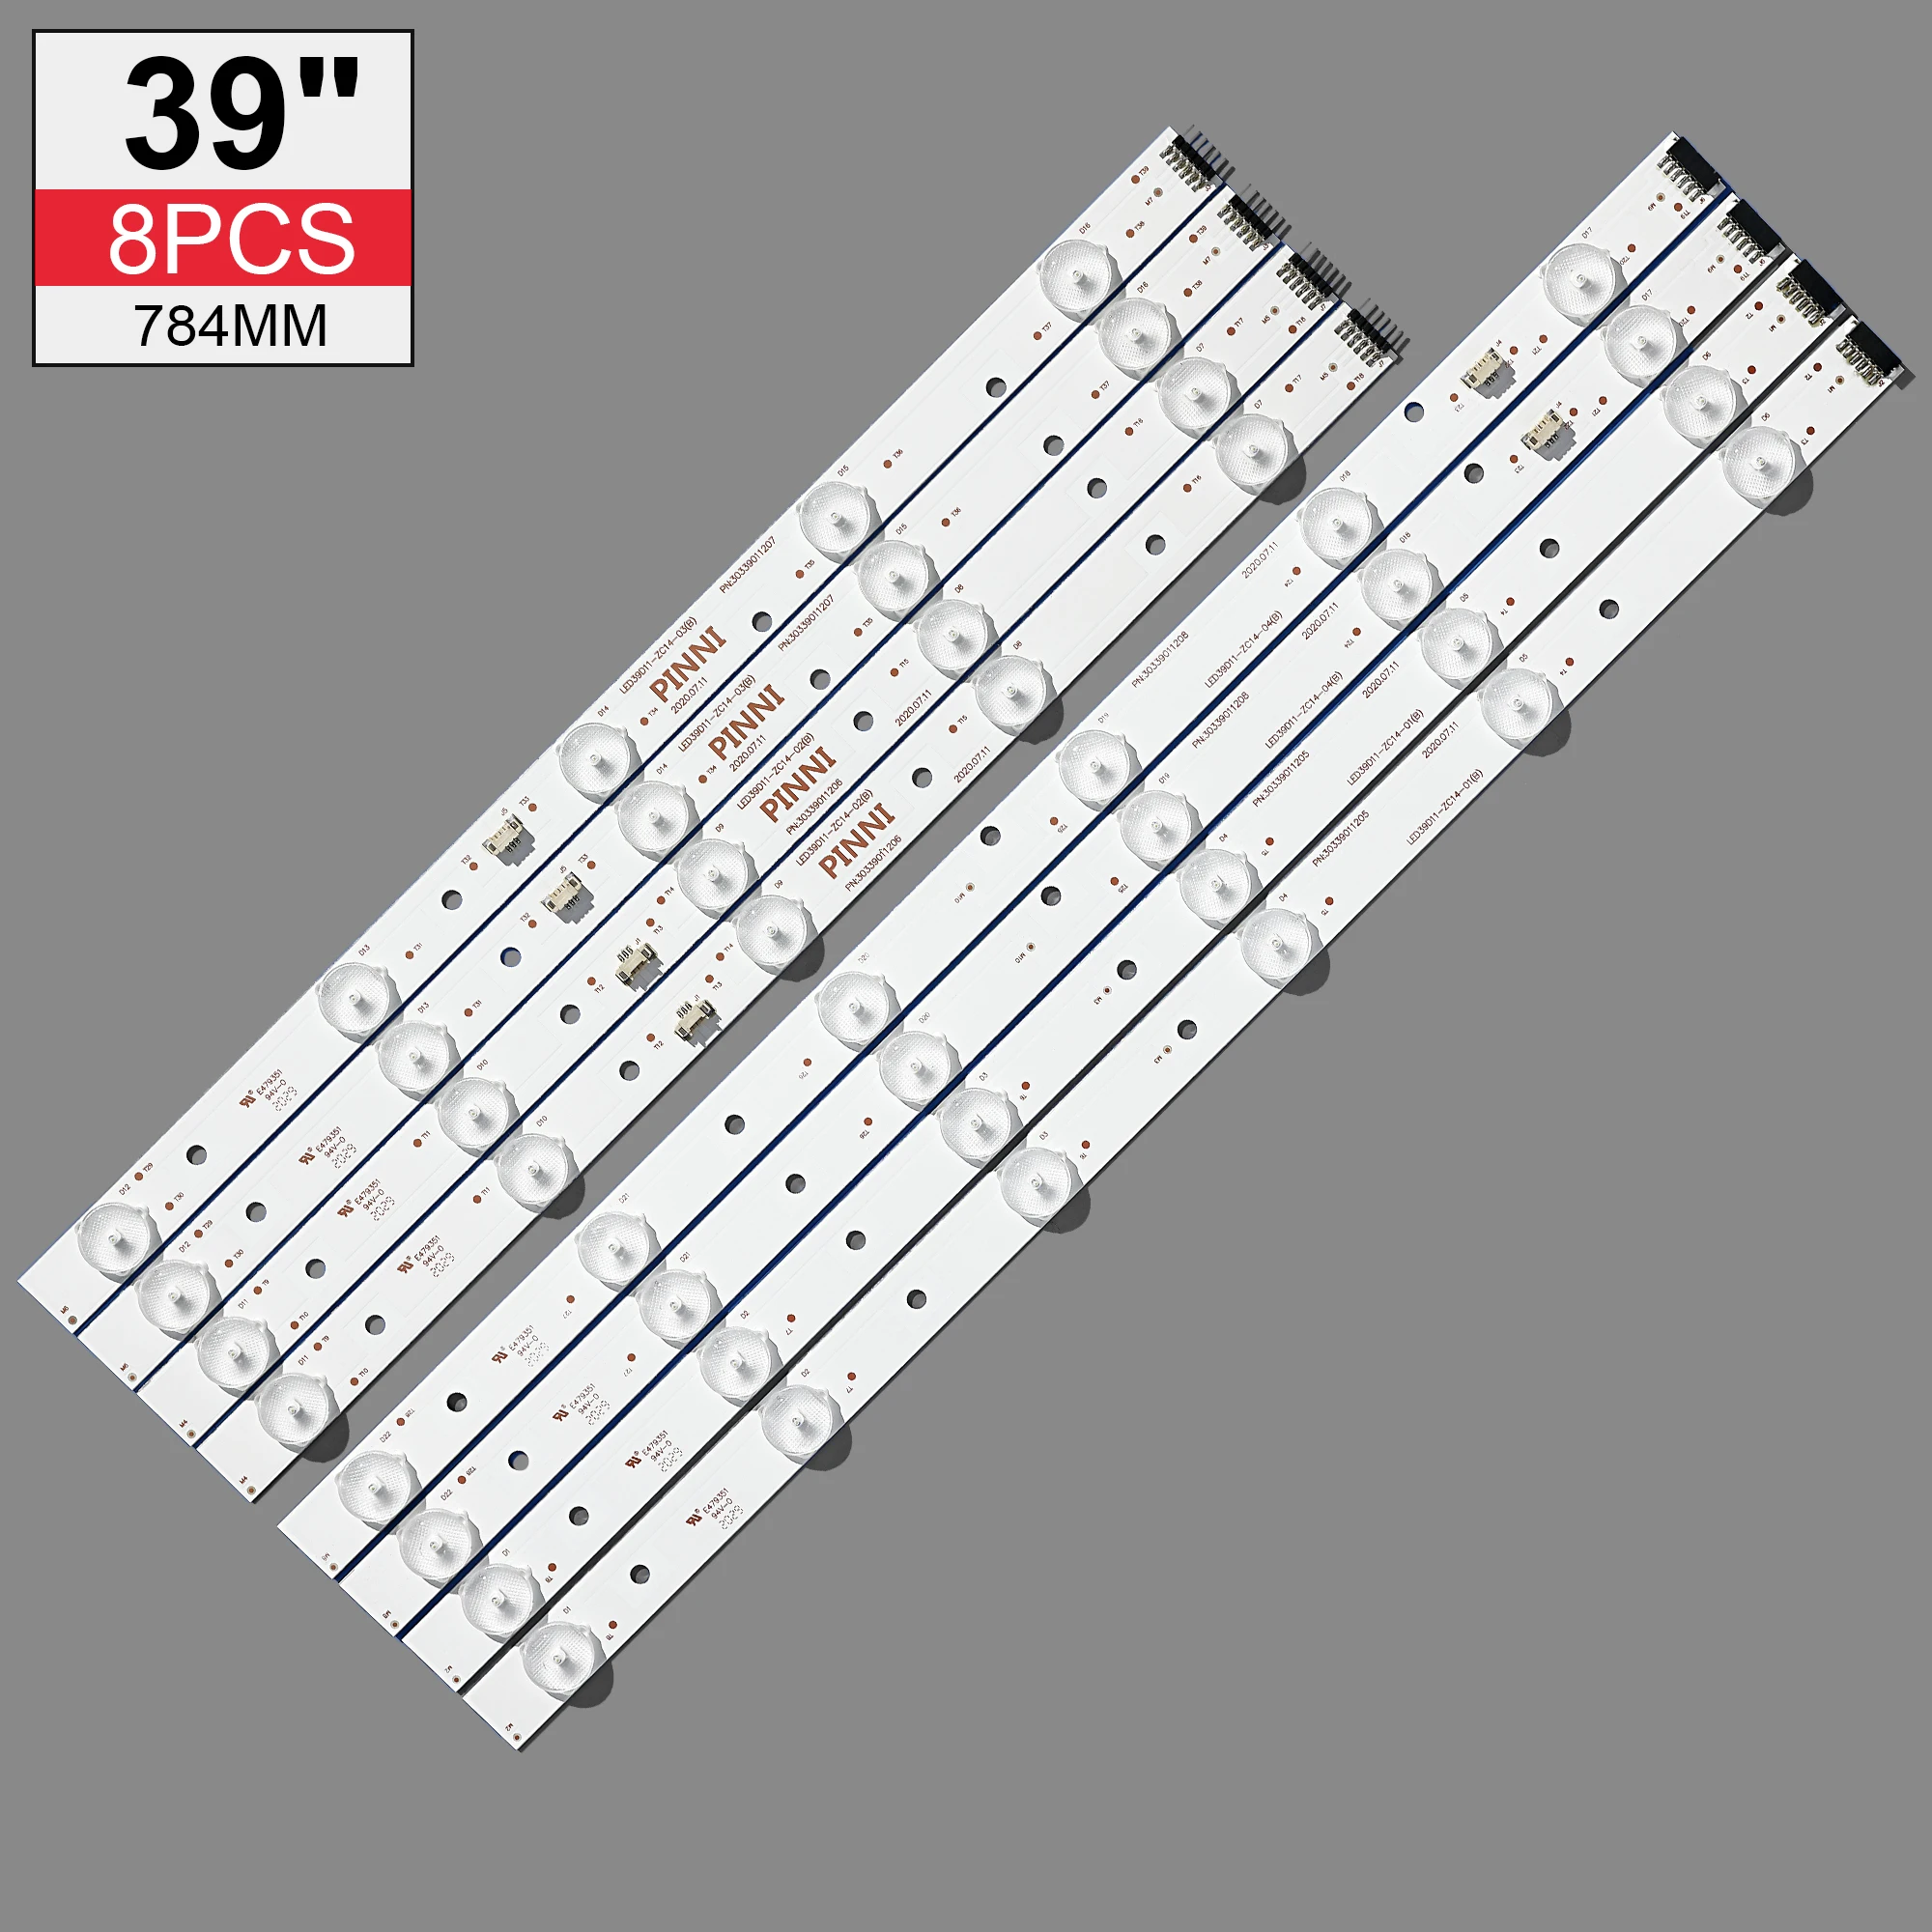 

LED Backlight strip 11 lamp For H-aier 39'' TV LED39D11-ZC14-01 02 03 04 (B) (C) 39DU3000 LE39M600F LE39PUV3 LE39PW3 V390HJ1-P02